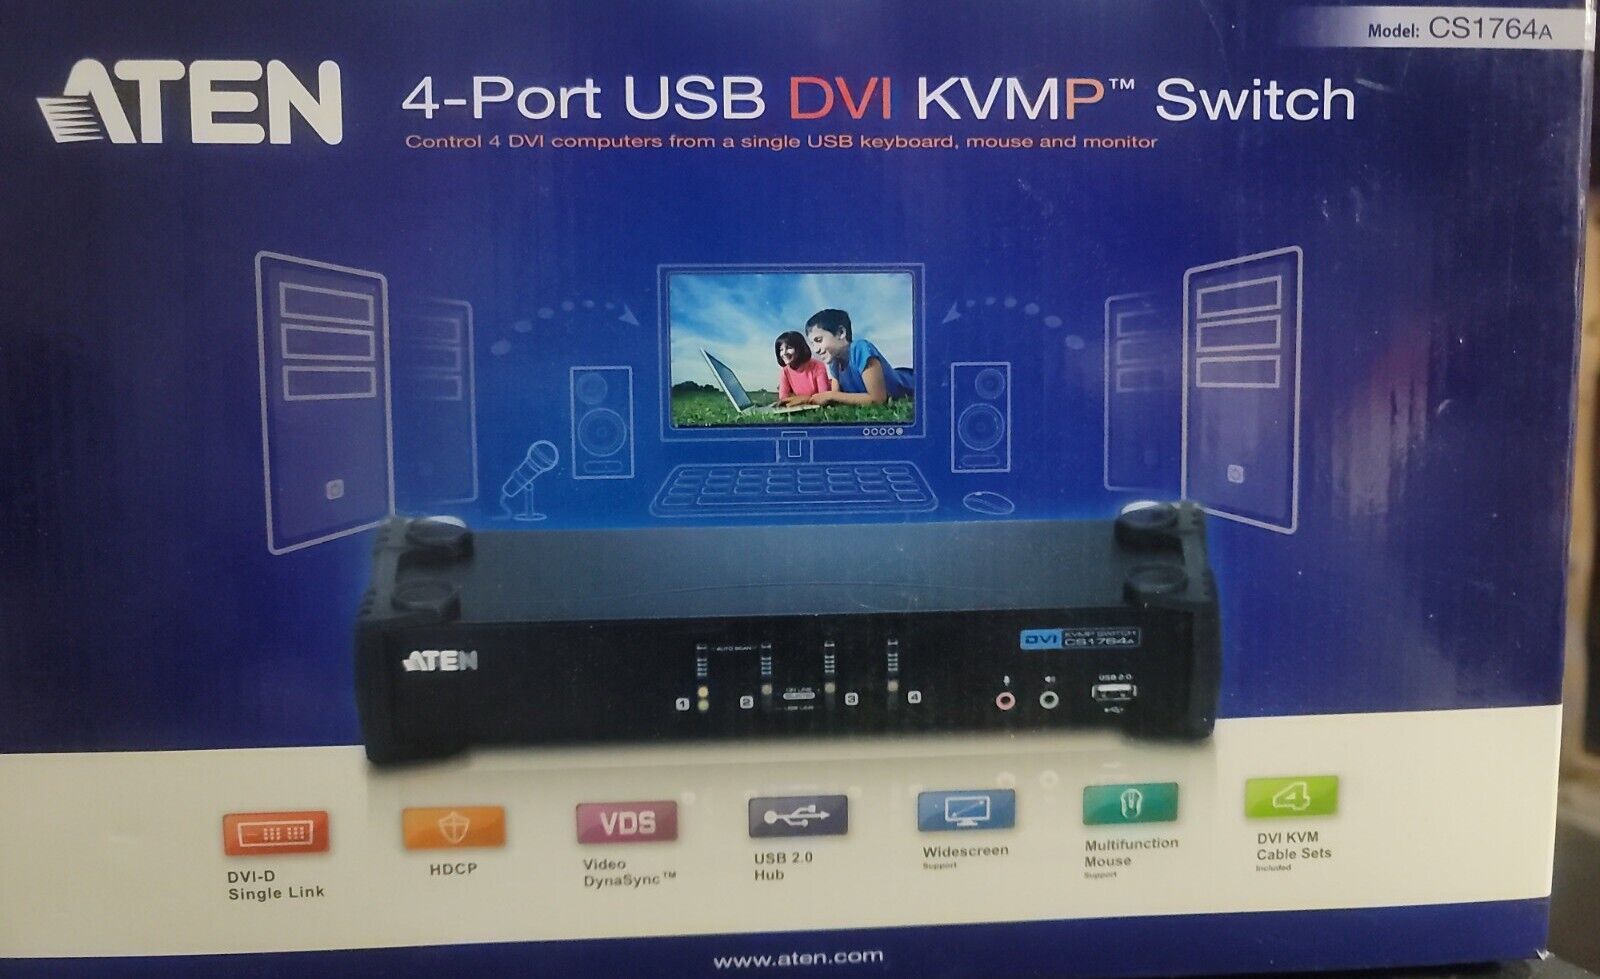 Aten CS1764A 4-Port USB DVI KVMP Switch